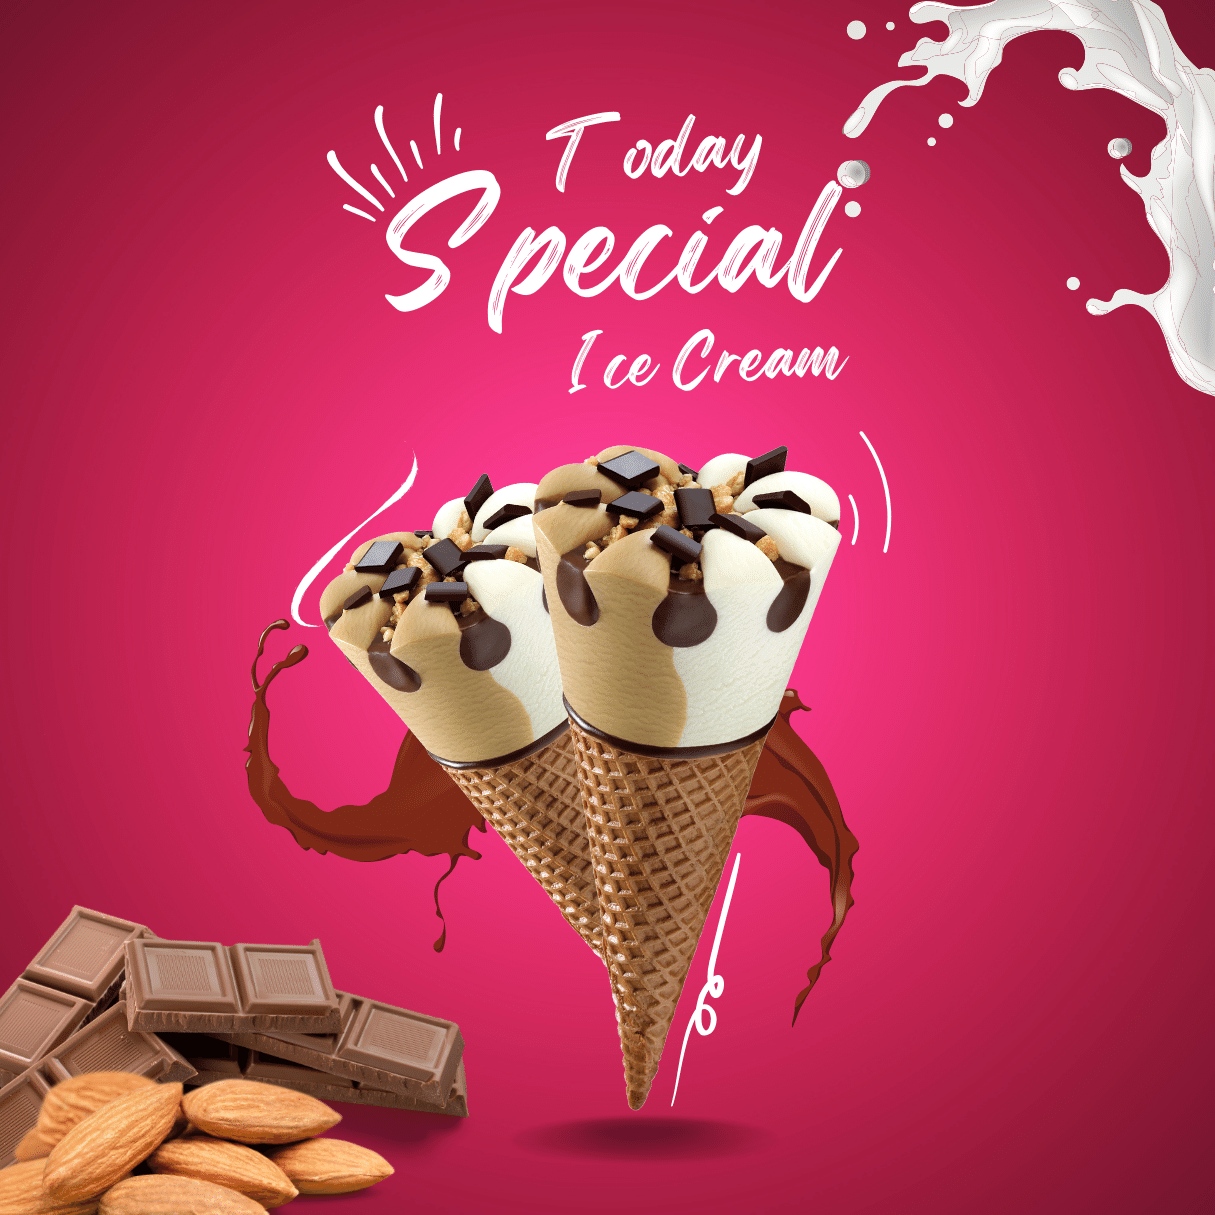 special ice cream instagram post 1 617